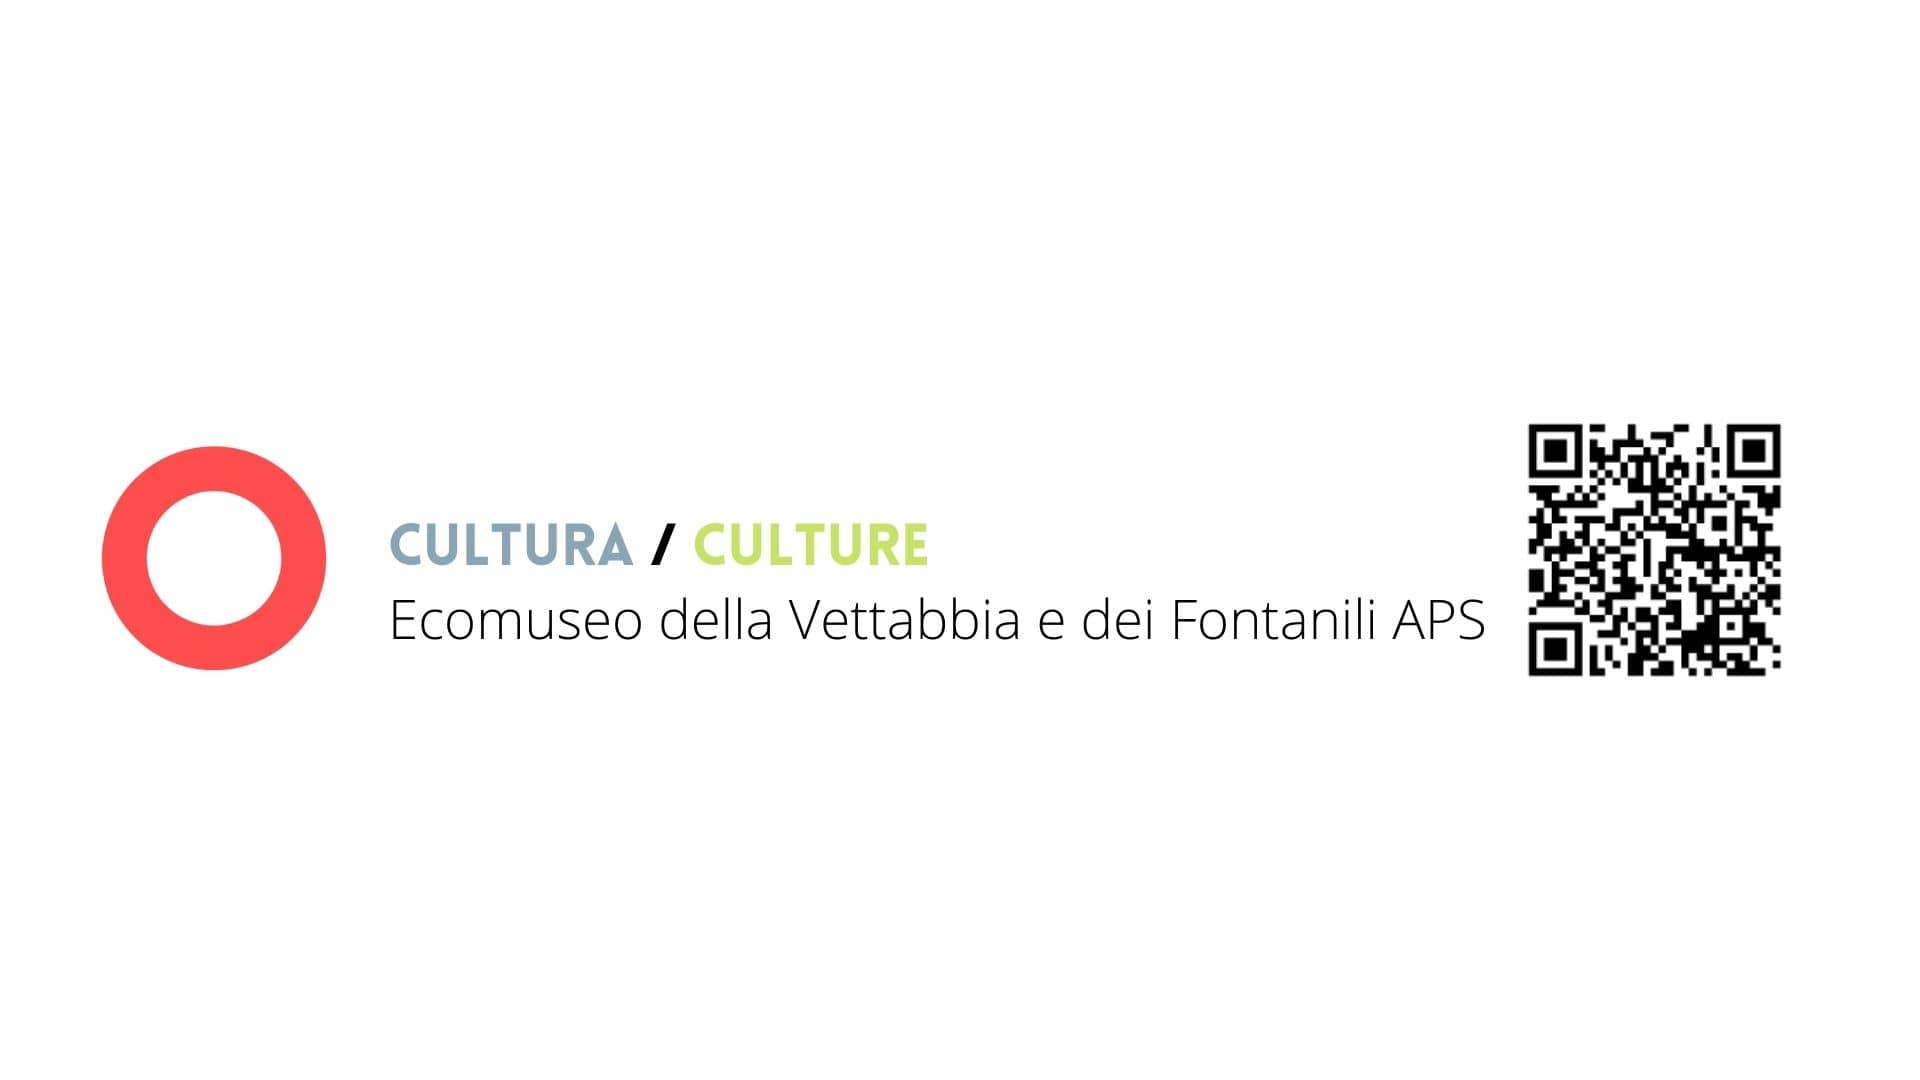 Cultura - Culture - Ecomuseo della Vettabbia e dei Fonyanili APS